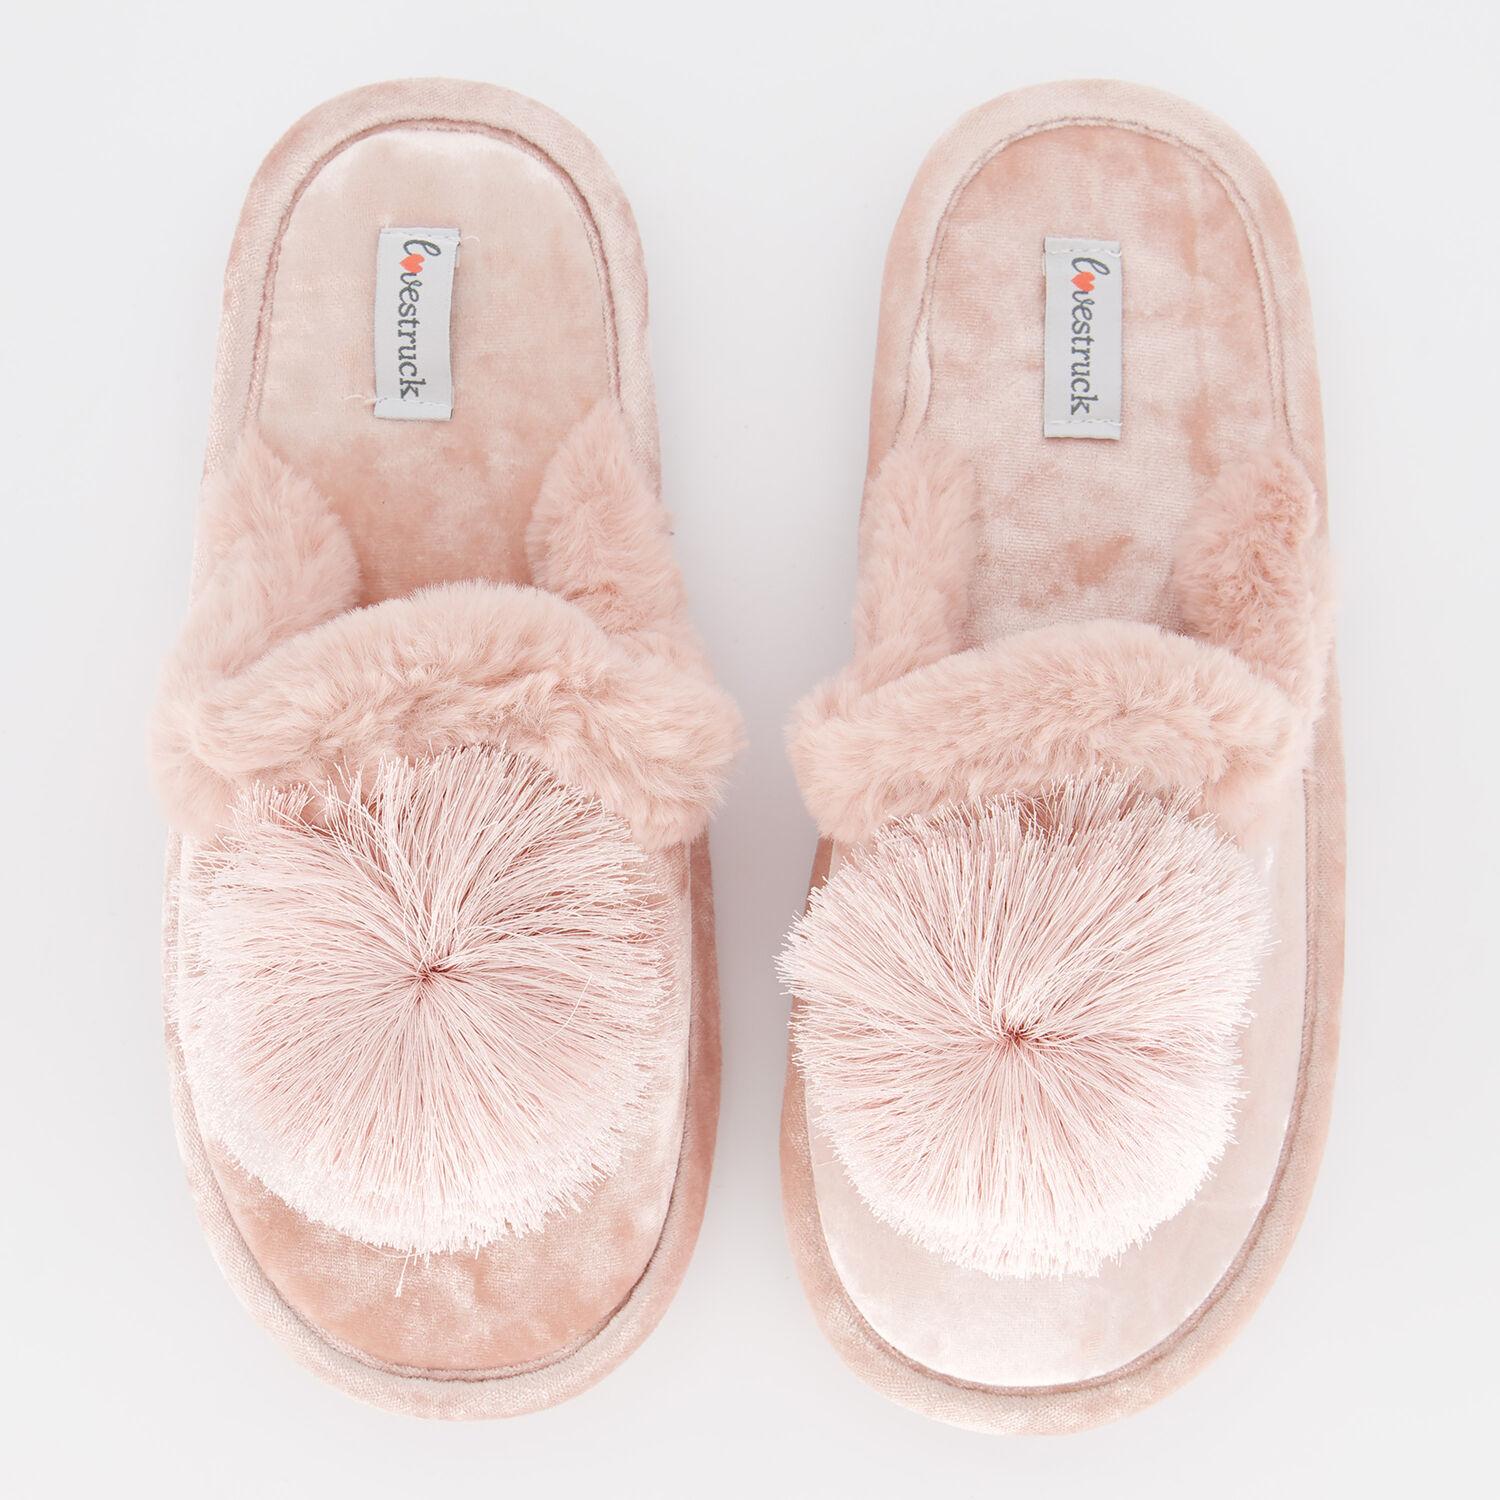 Soft Pink Pom Pom Slippers - TK Maxx UK